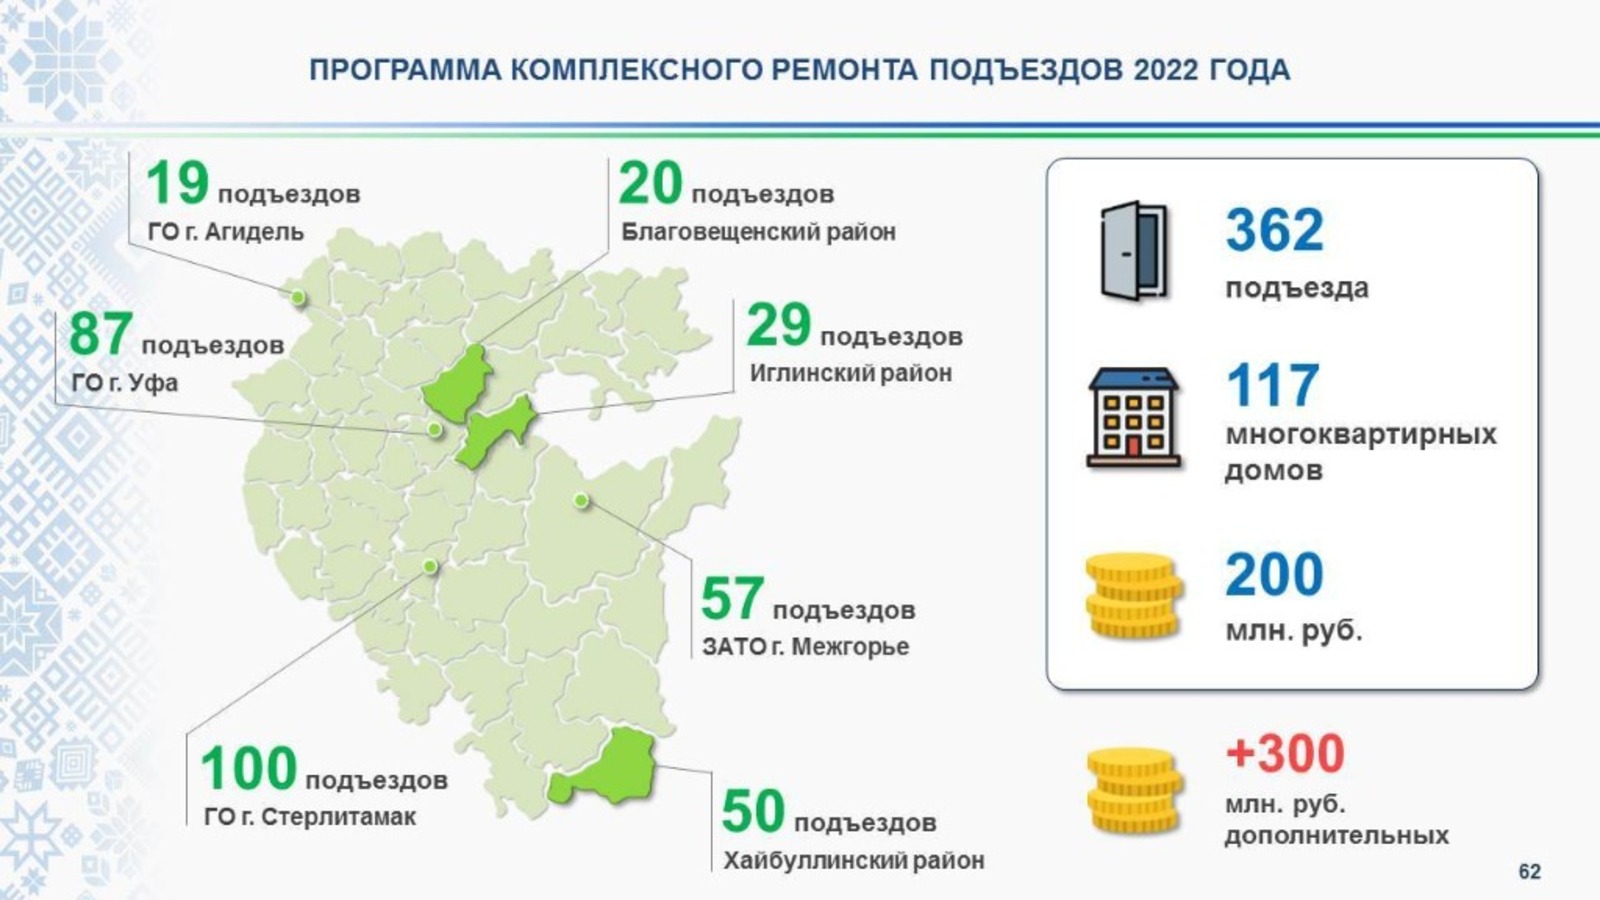 В Башкирии в 2022 году планируют отремонтировать 362 подъезда и благоустроить 200 дворов